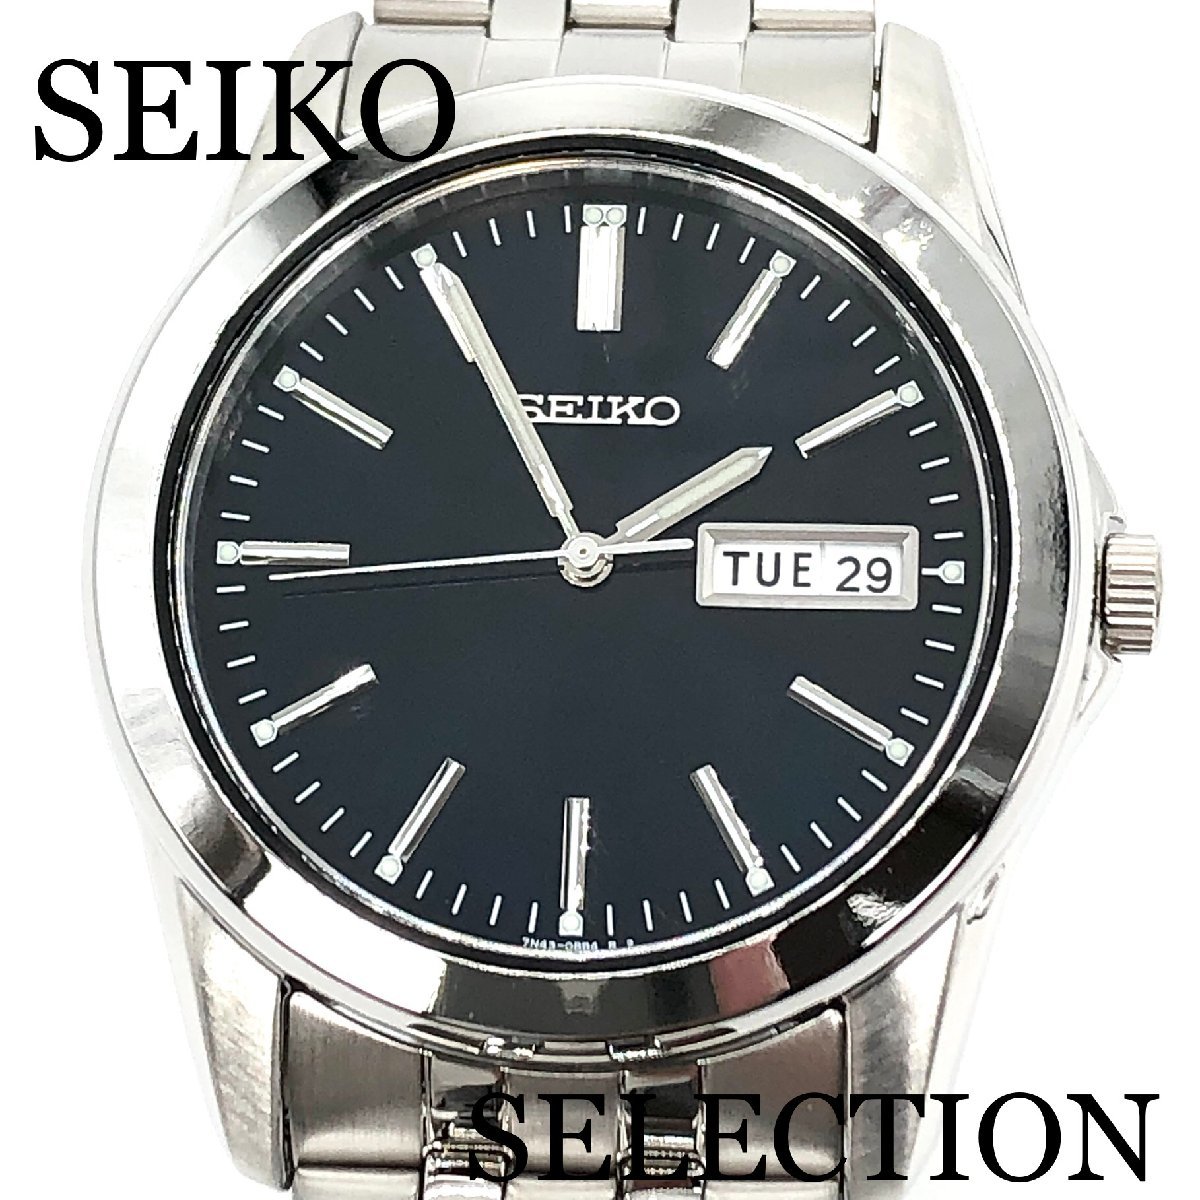 新品正規品『SEIKO SELECTION』セイコー セレクション 腕時計 メンズ SCXC013【送料無料】_画像1